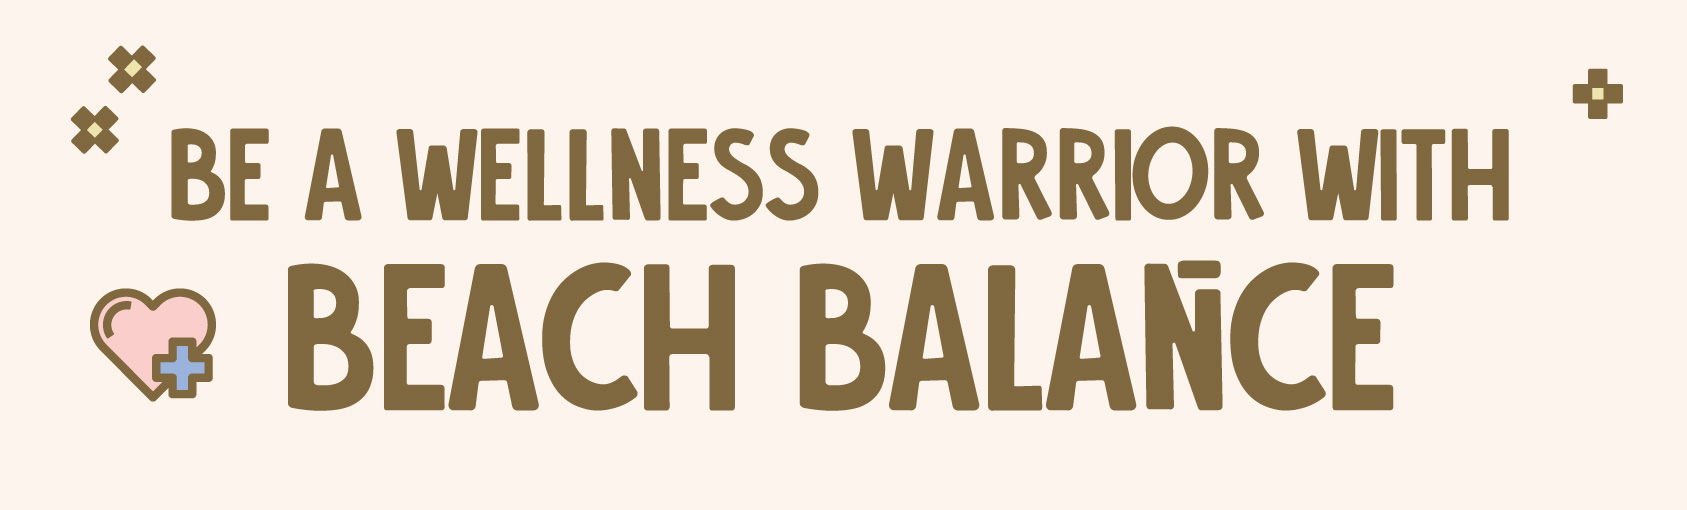 Be a Wellness Warrior with Beach Balance banner